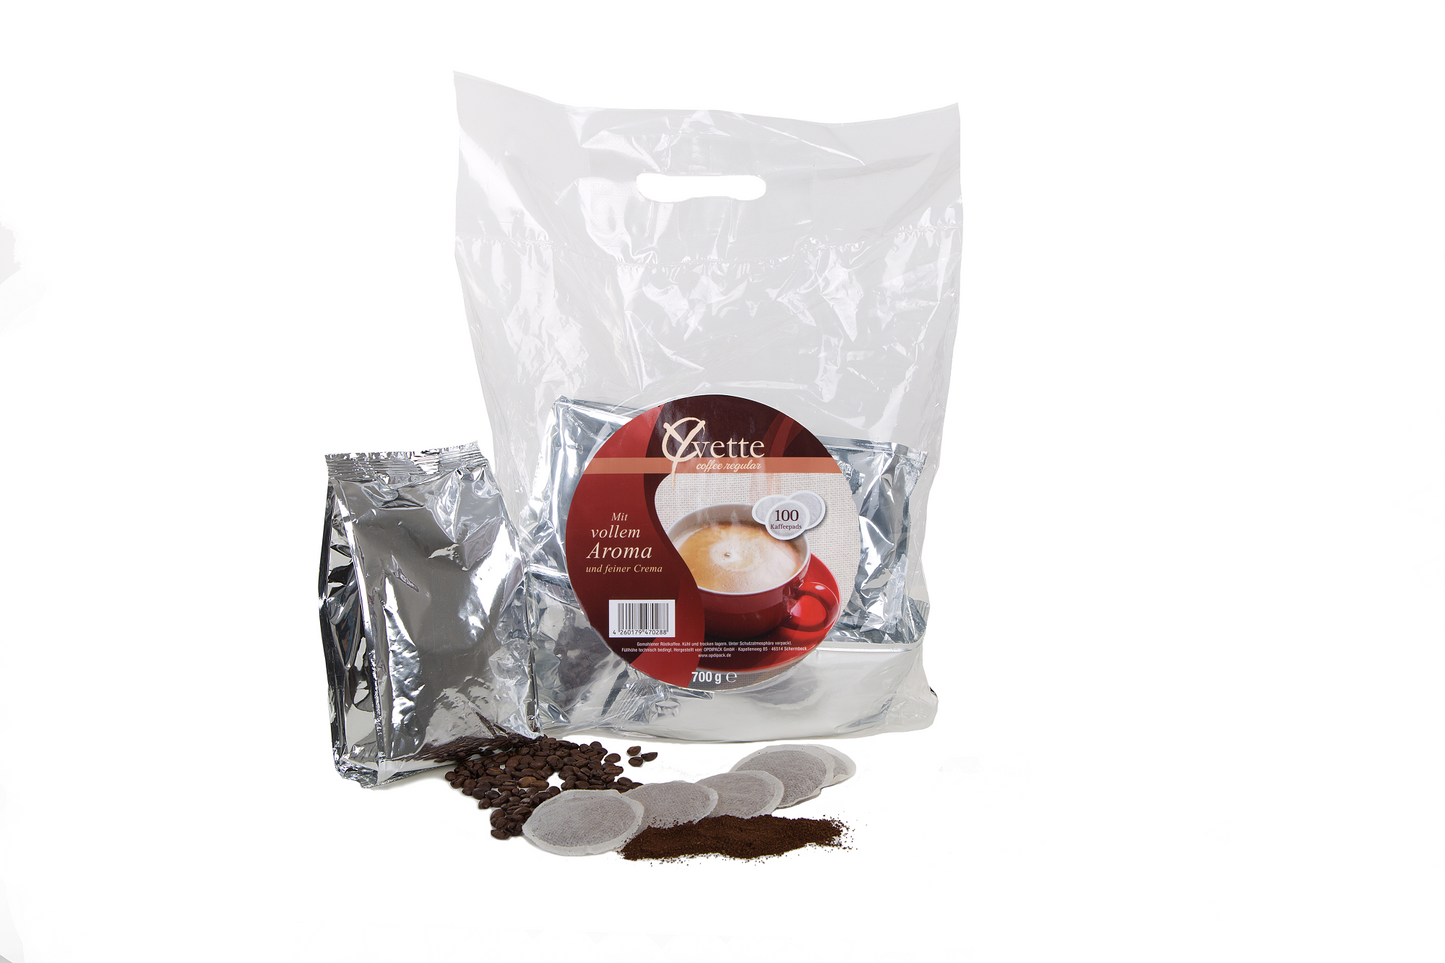 Yvette Kaffeepads Vorratspack mit silberne Verpackung und verstreuten Kaffeepads, Kaffeebohne und Mahlkaffee